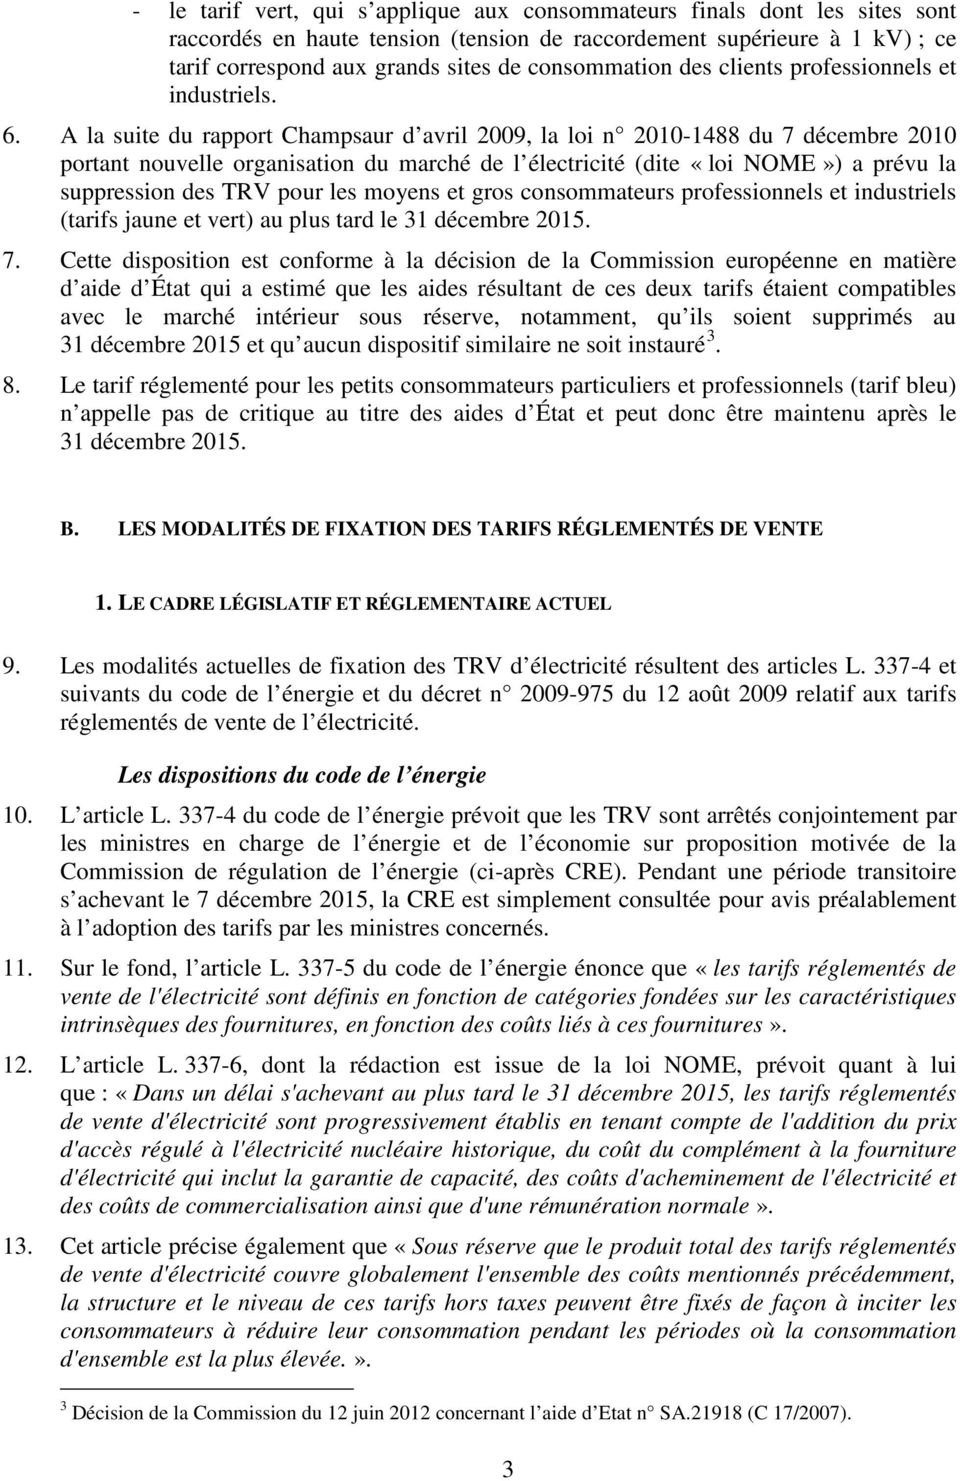 A la suite du rapport Champsaur d avril 2009, la loi n 2010-1488 du 7 décembre 2010 portant nouvelle organisation du marché de l électricité (dite «loi NOME») a prévu la suppression des TRV pour les